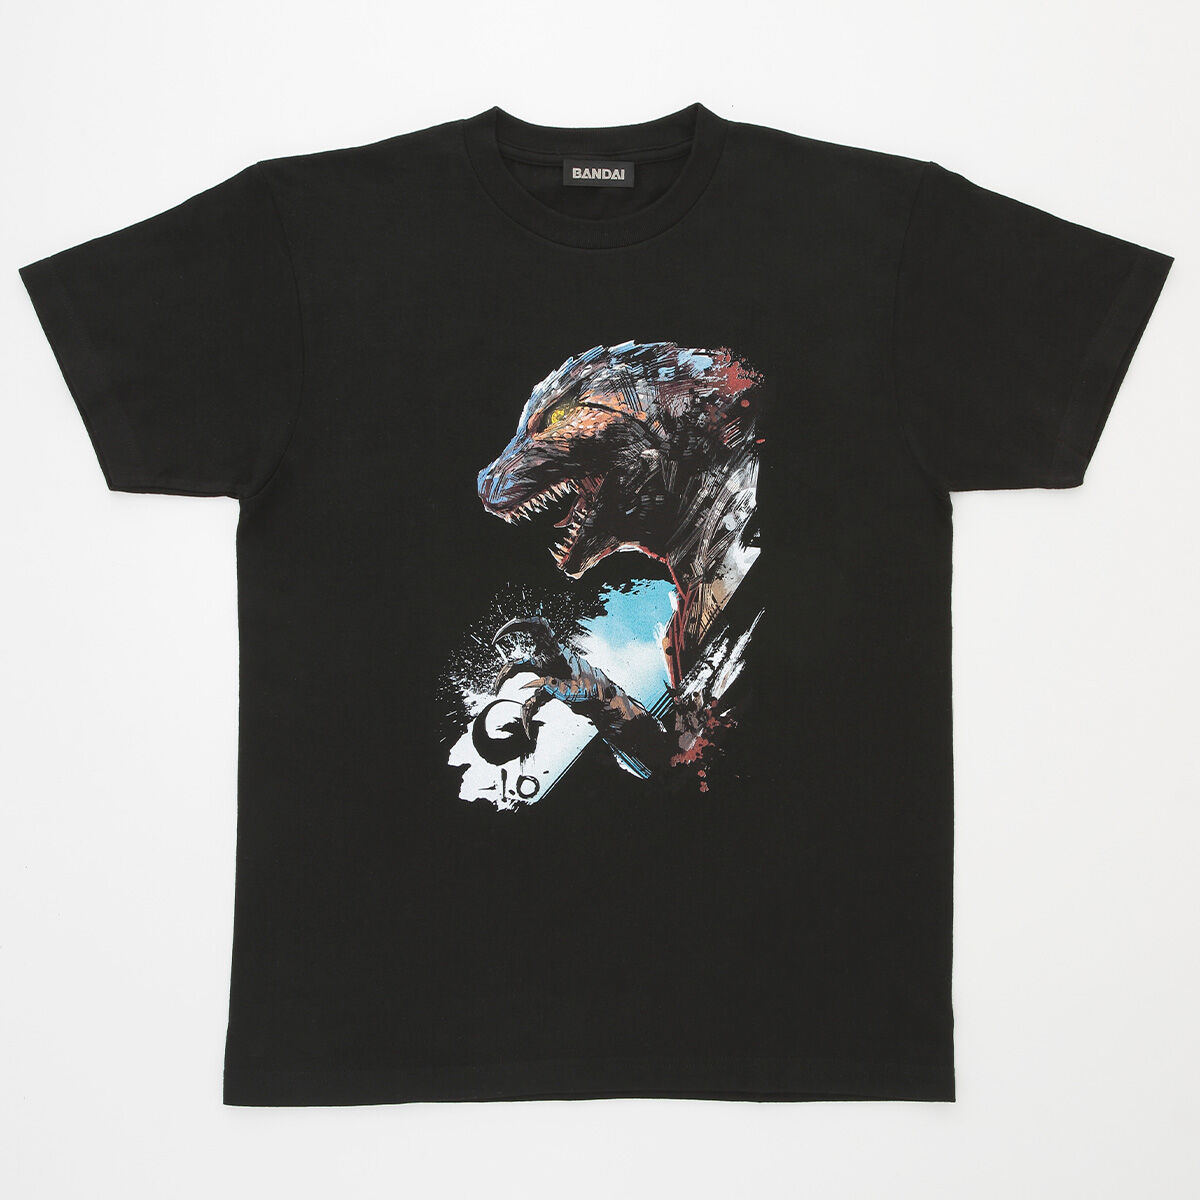 ゴジラ-1.0 デザインTシャツ【再販】 | ゴジラシリーズ ファッション ...